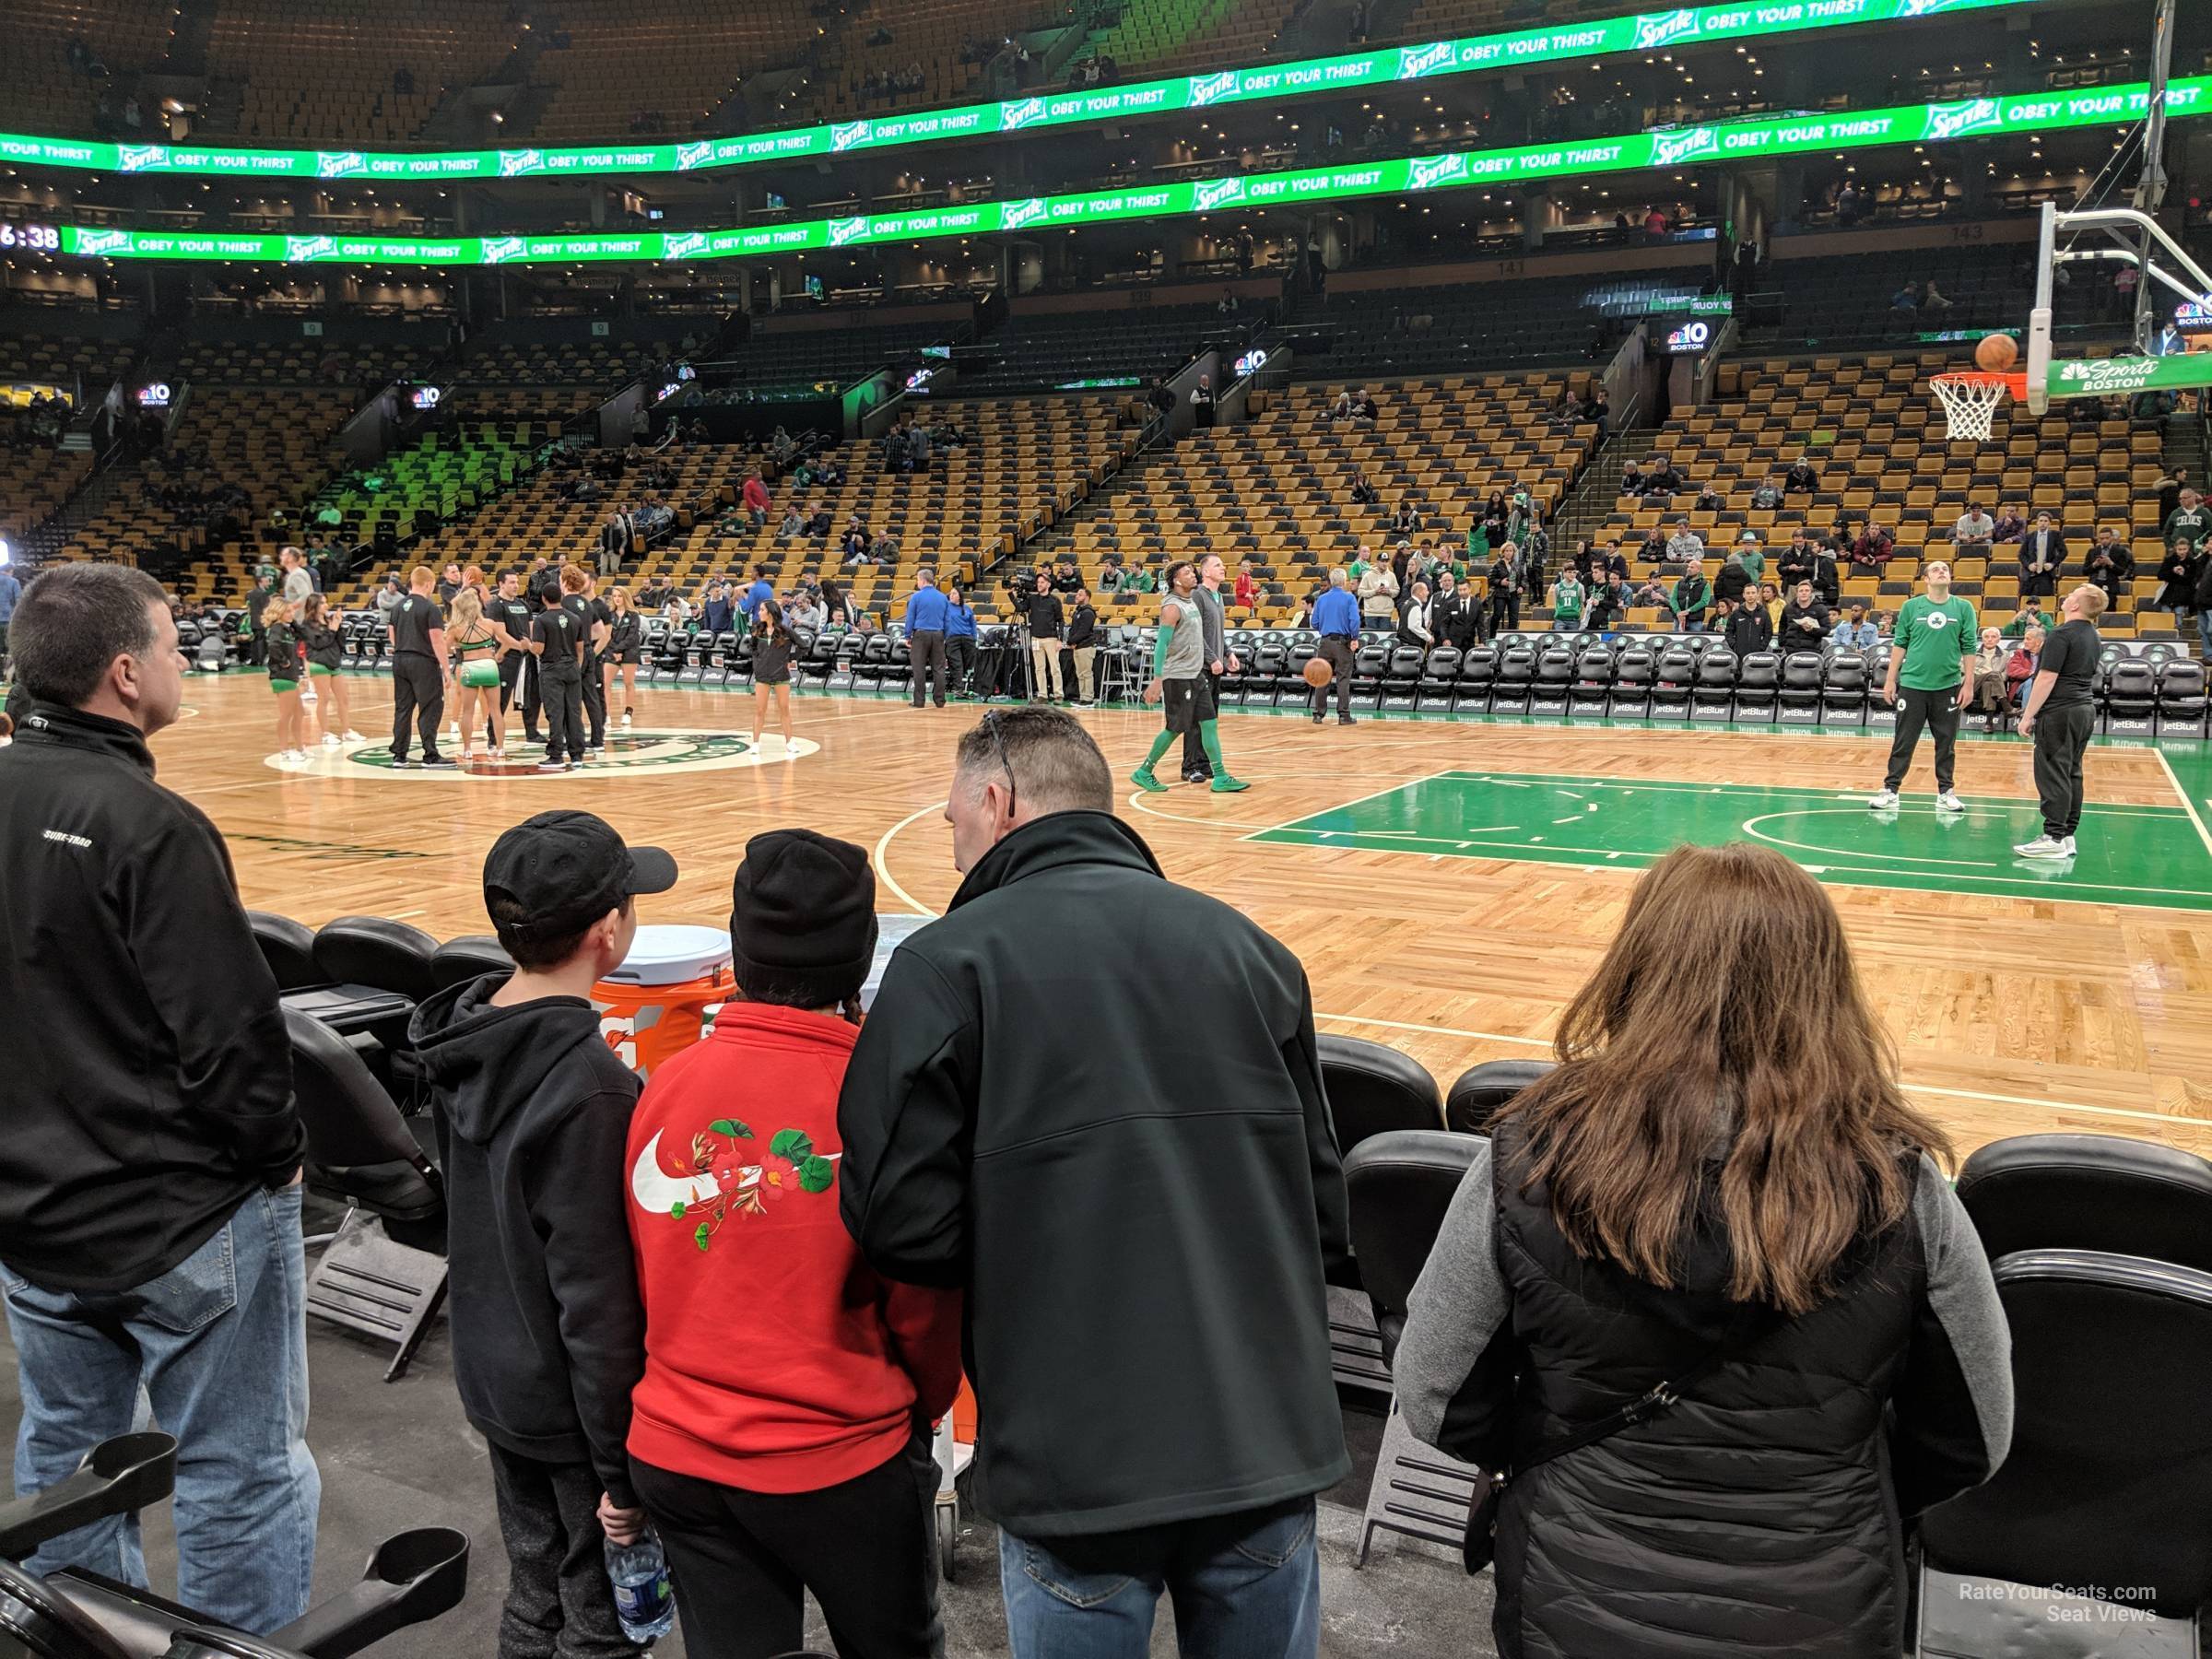 TD Garden Floor 22 Boston Celtics RateYourSeats com